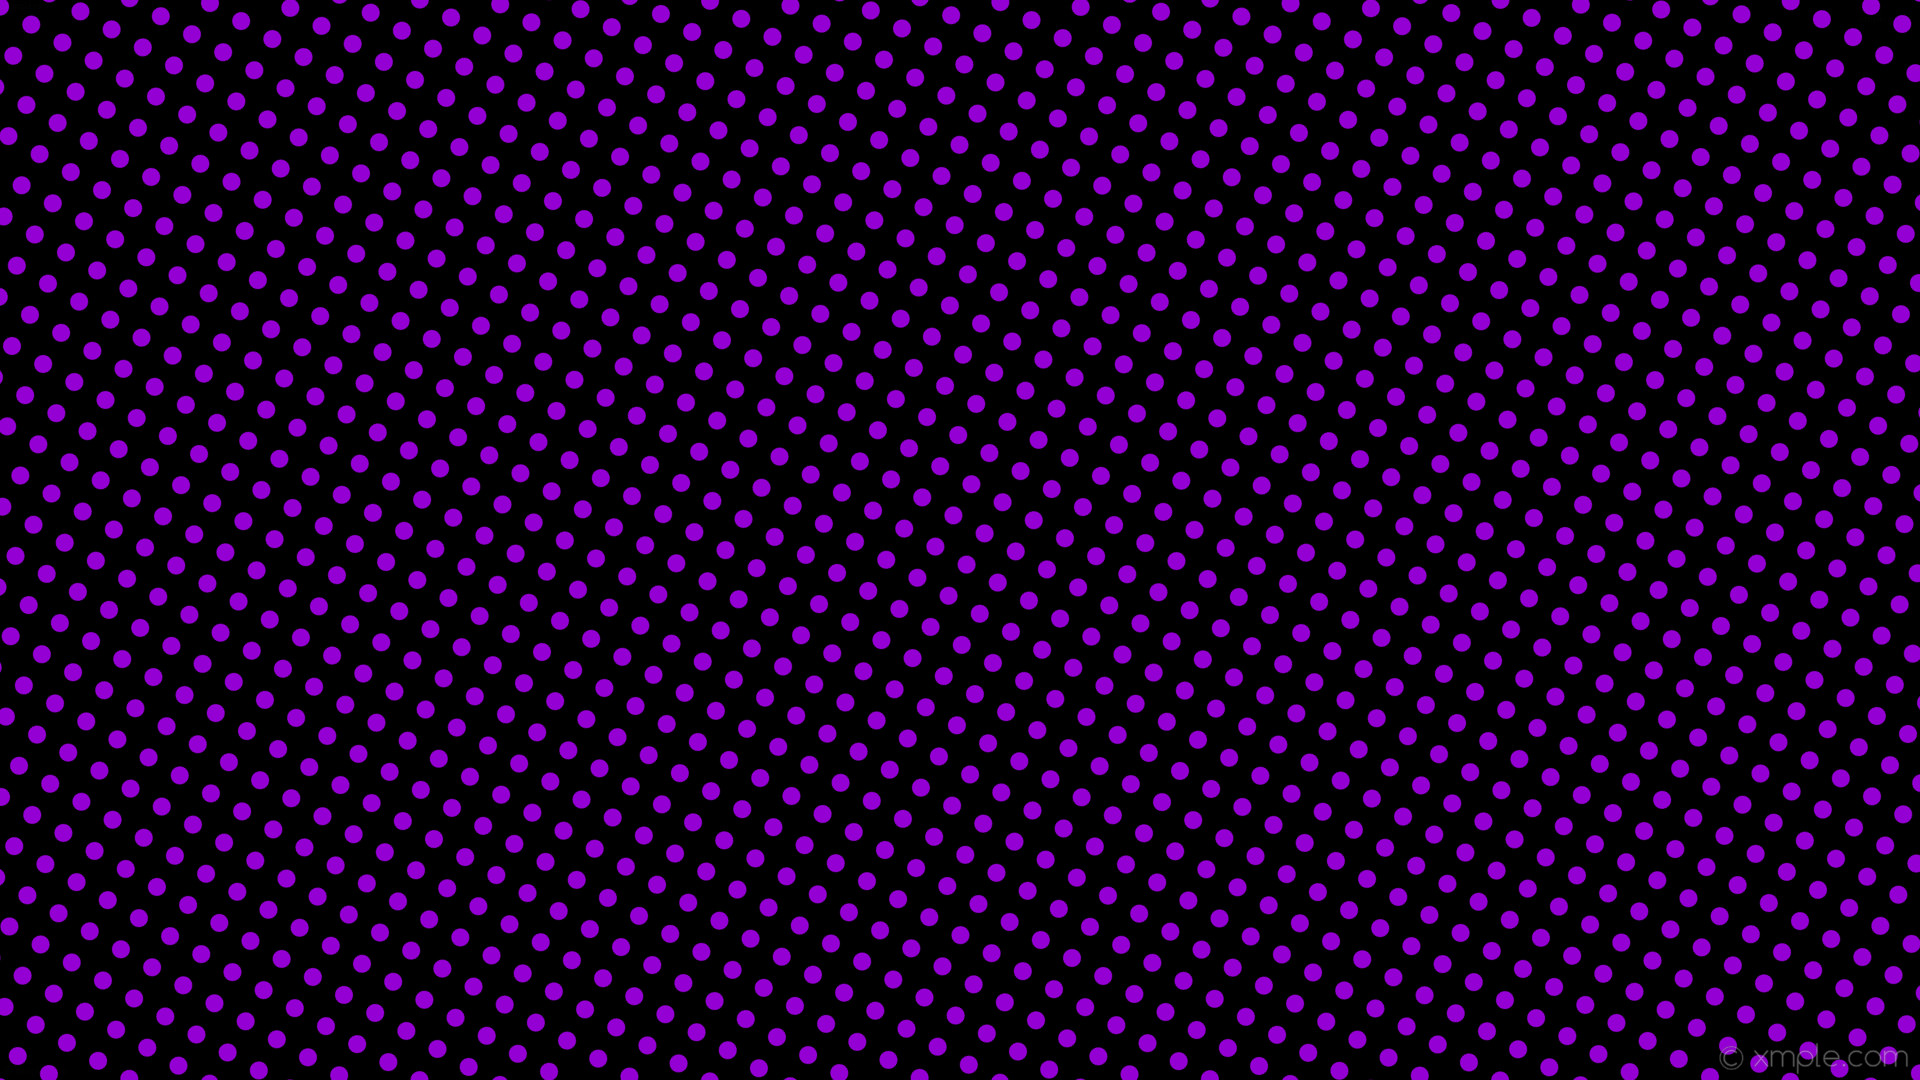 1920x1080 wallpaper purple black spots polka dots dark violet #000000 #9400d3 330Â°  18px 36px